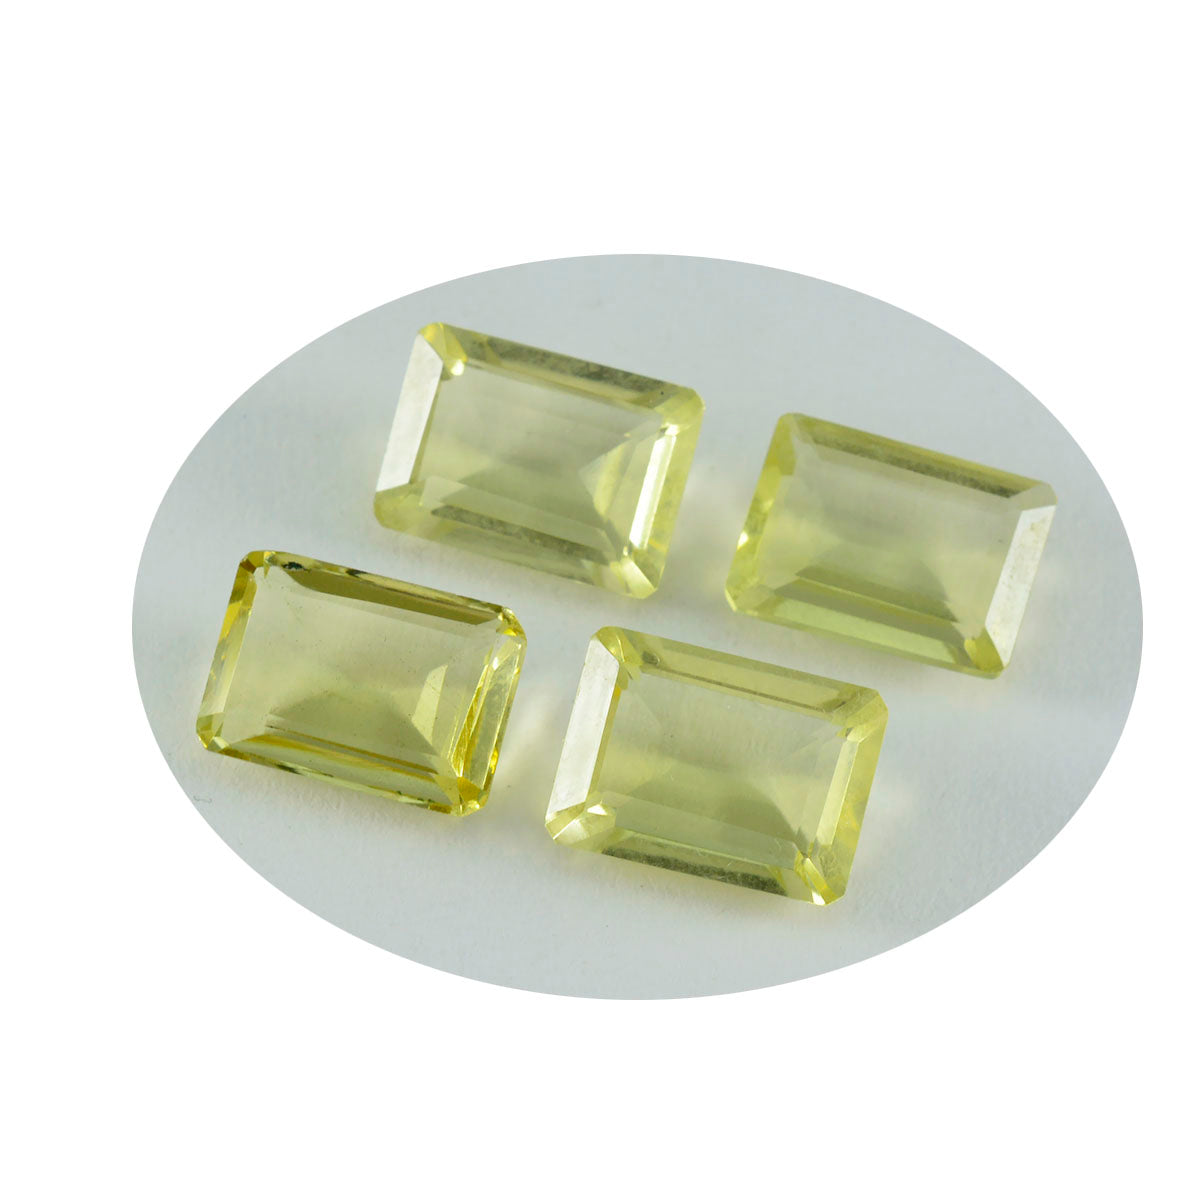 riyogems 1 pieza de cuarzo limón amarillo facetado 10x12 mm forma octágono piedra preciosa de calidad atractiva